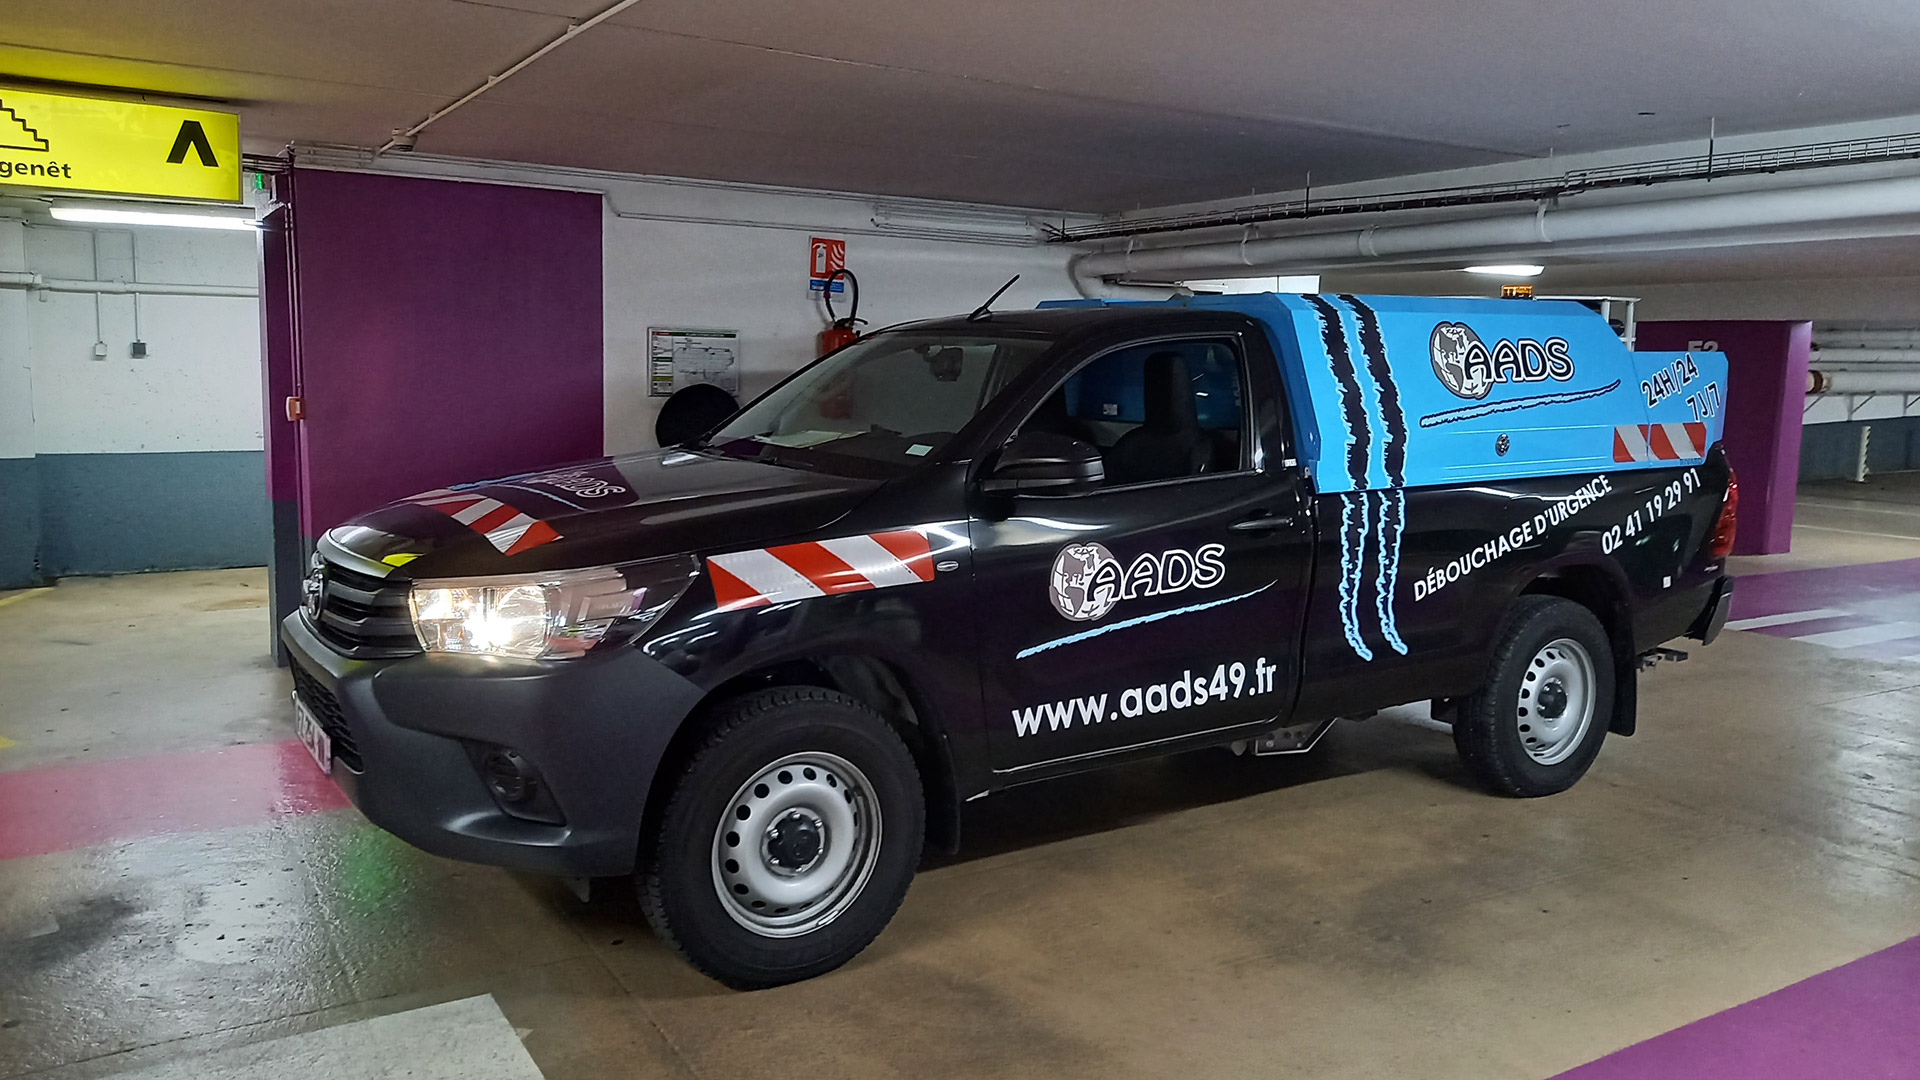 vehicule d'intervention d'urgence de la société AADS dans un parking souterrain